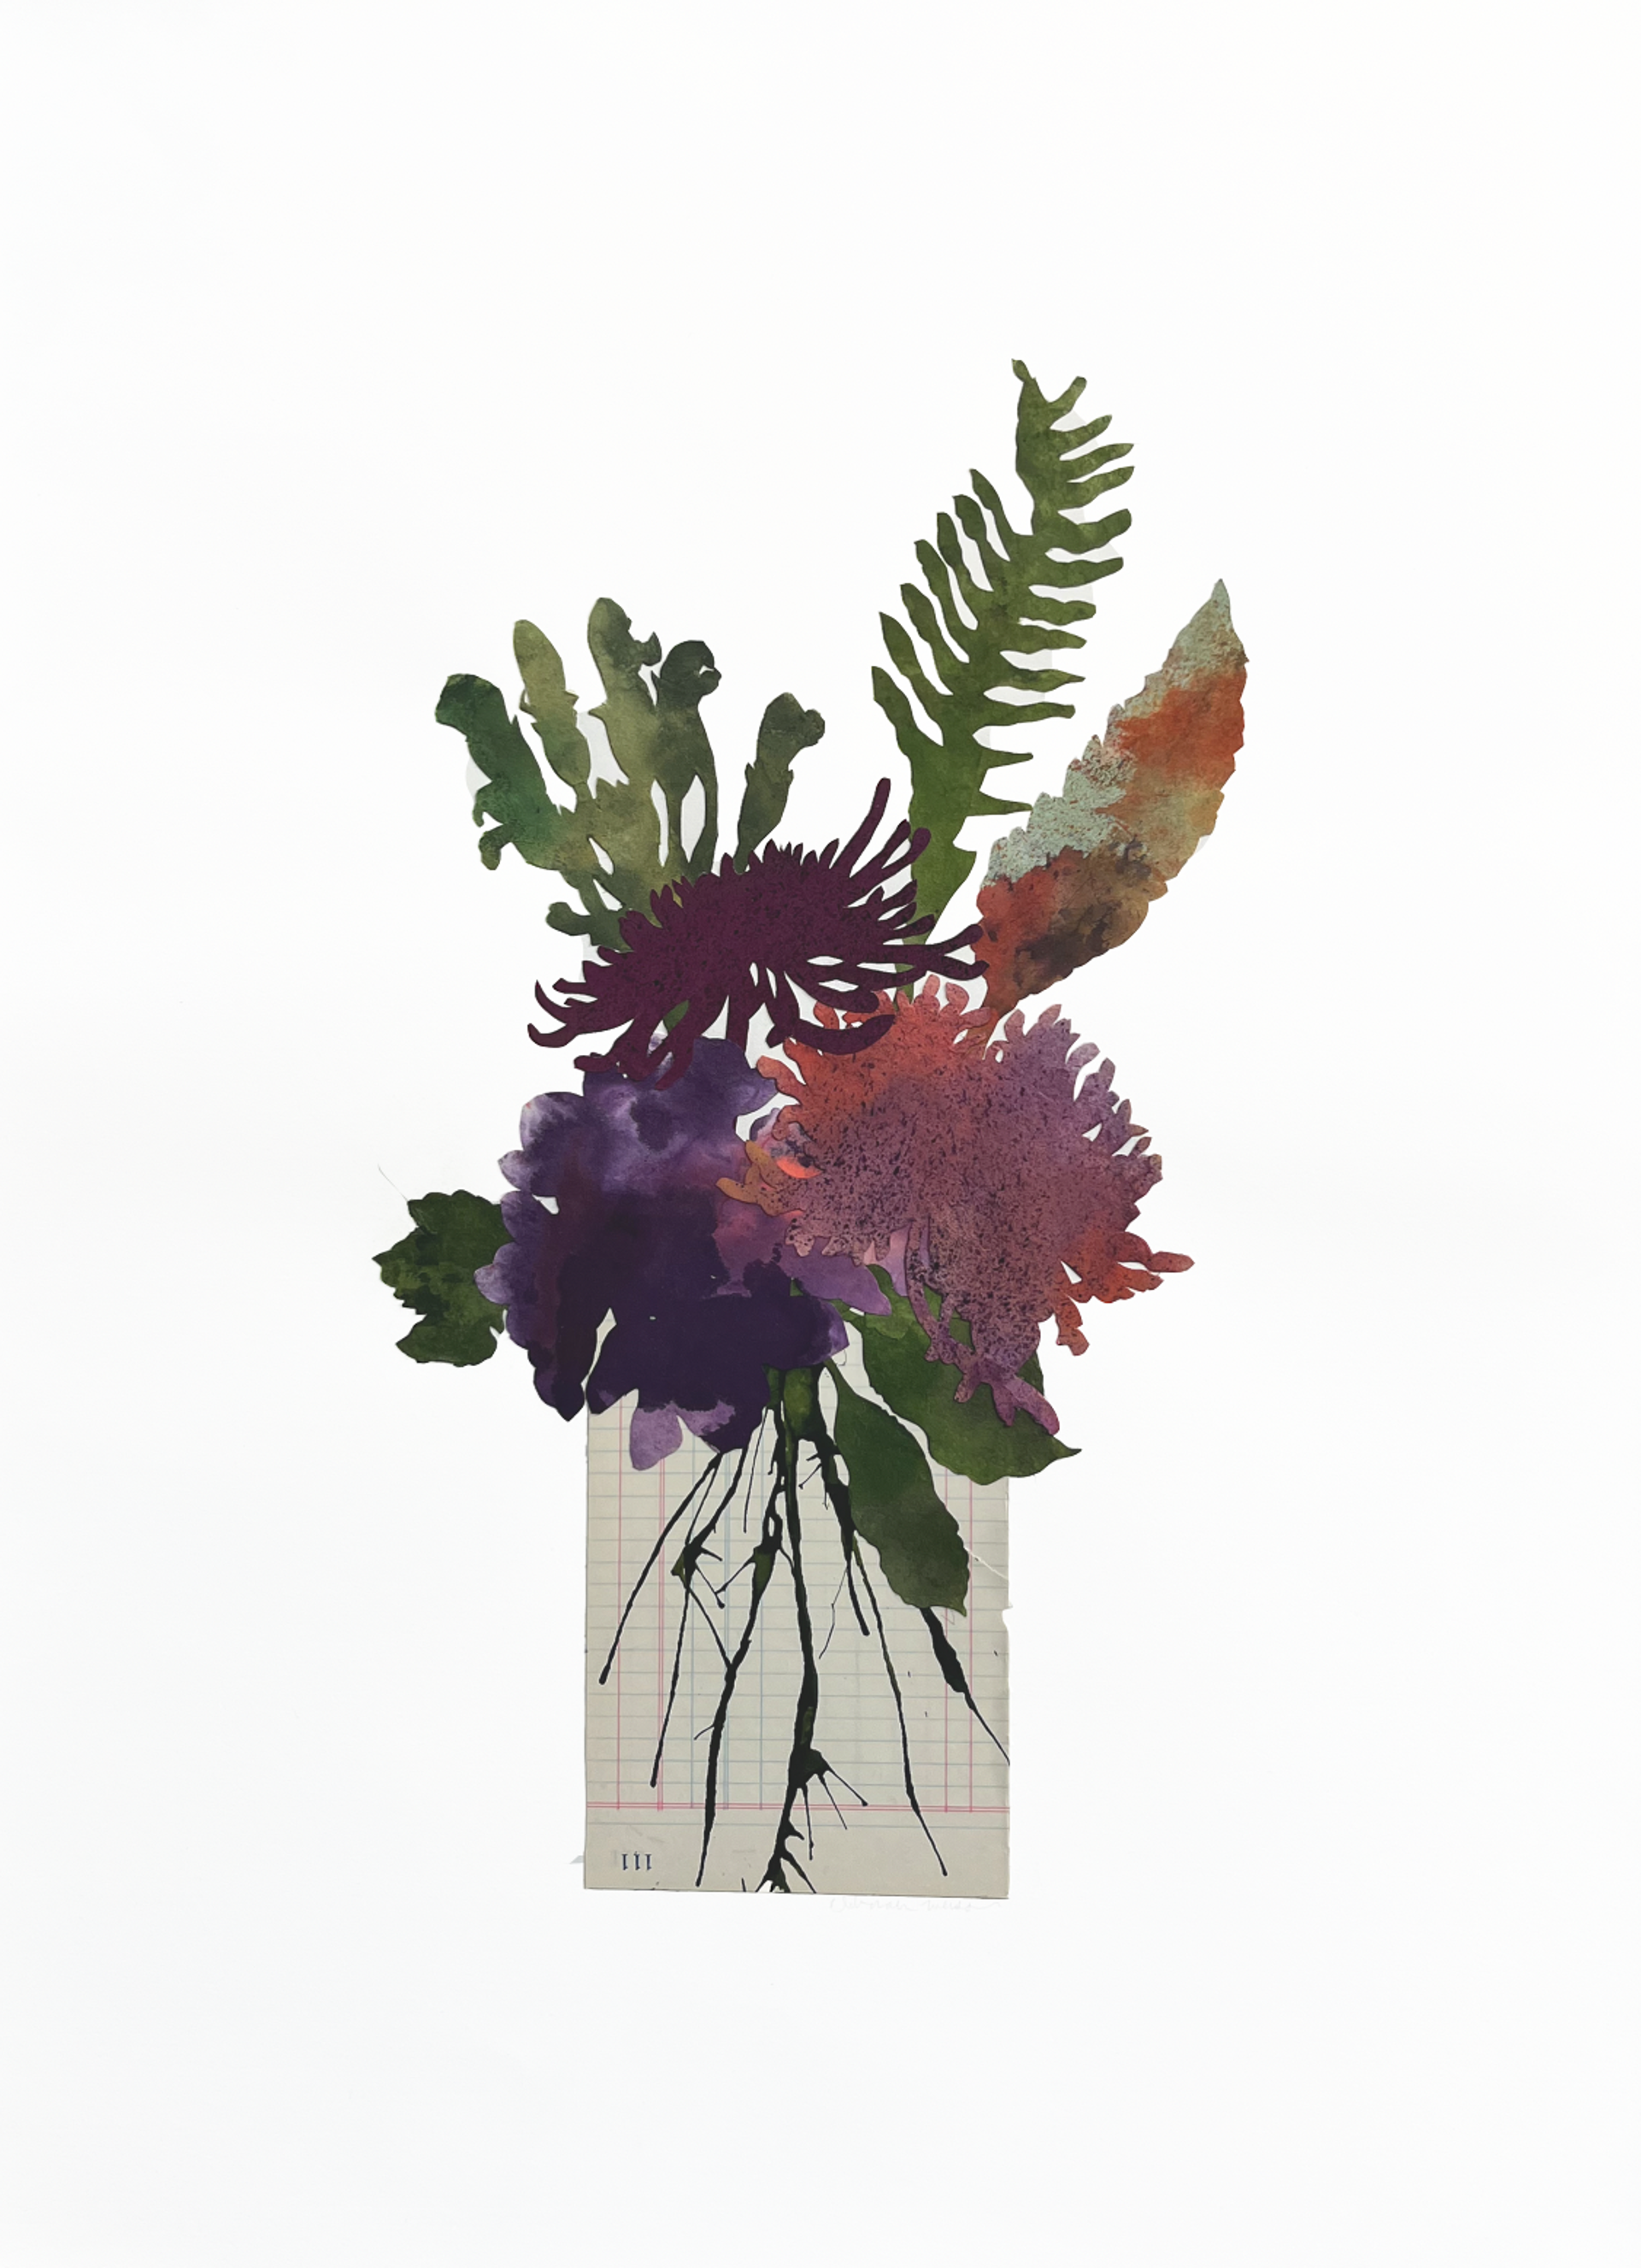 Blooms + Stems by Deborah Weiss